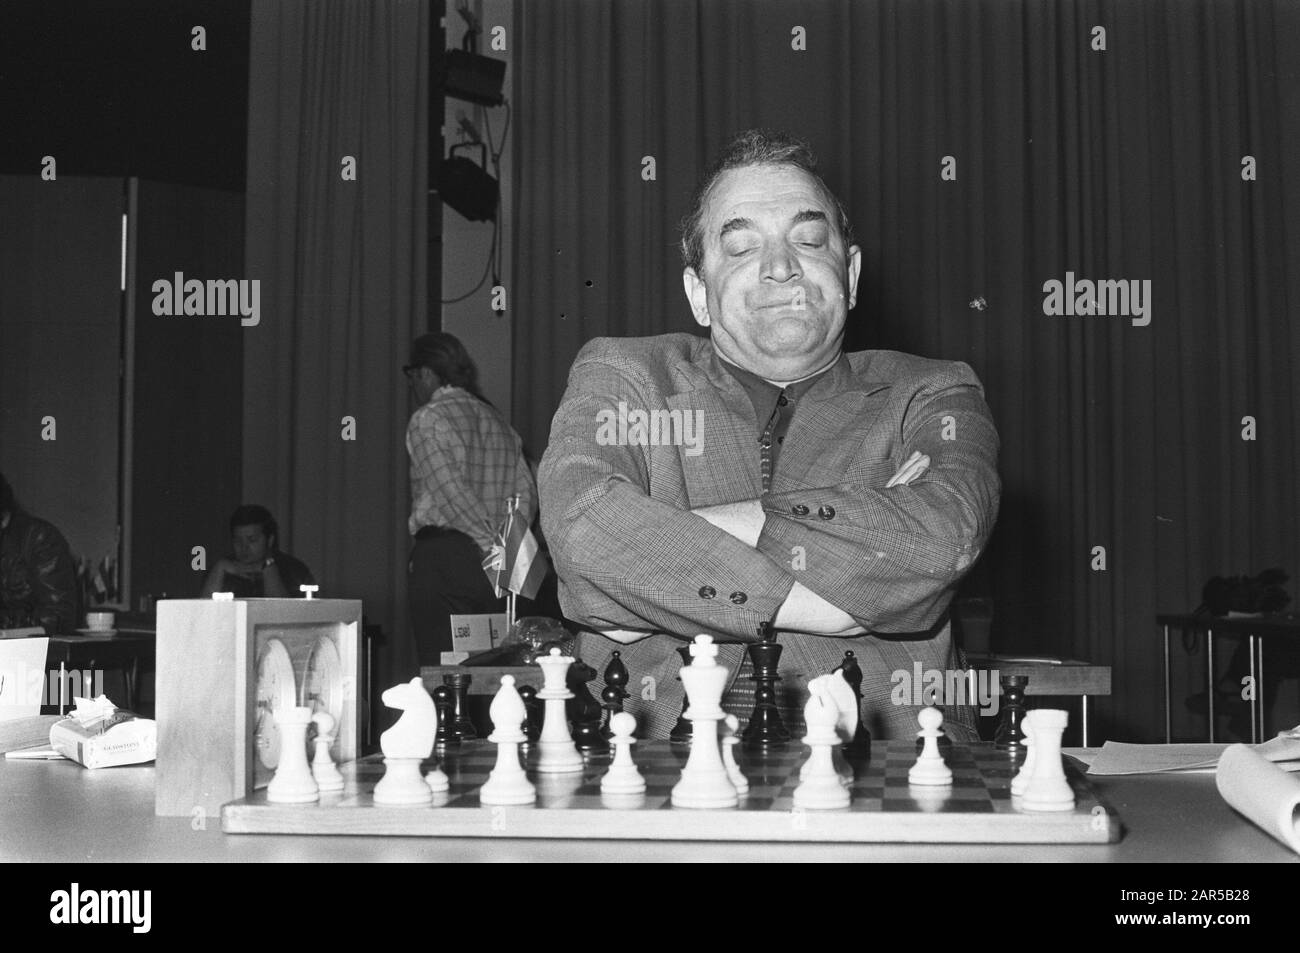 Kasparov pays tribute to Korchnoi